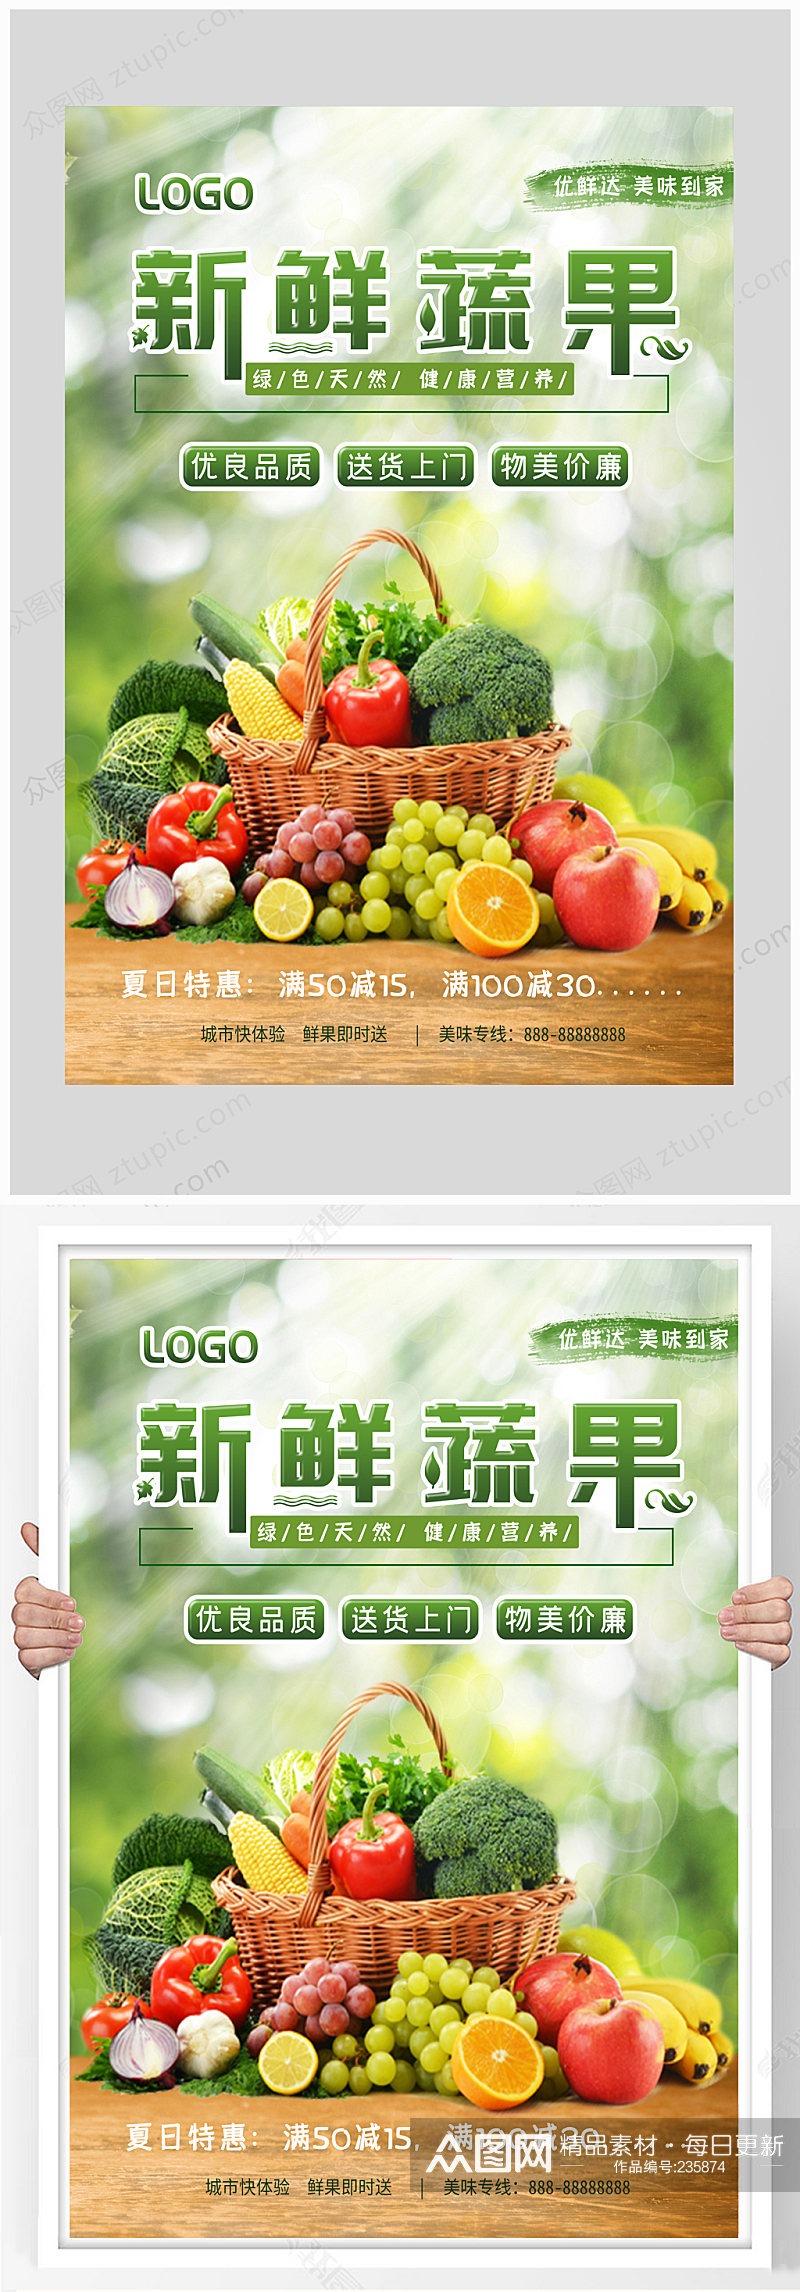 超市新鲜蔬果店铺海报超市海报素材